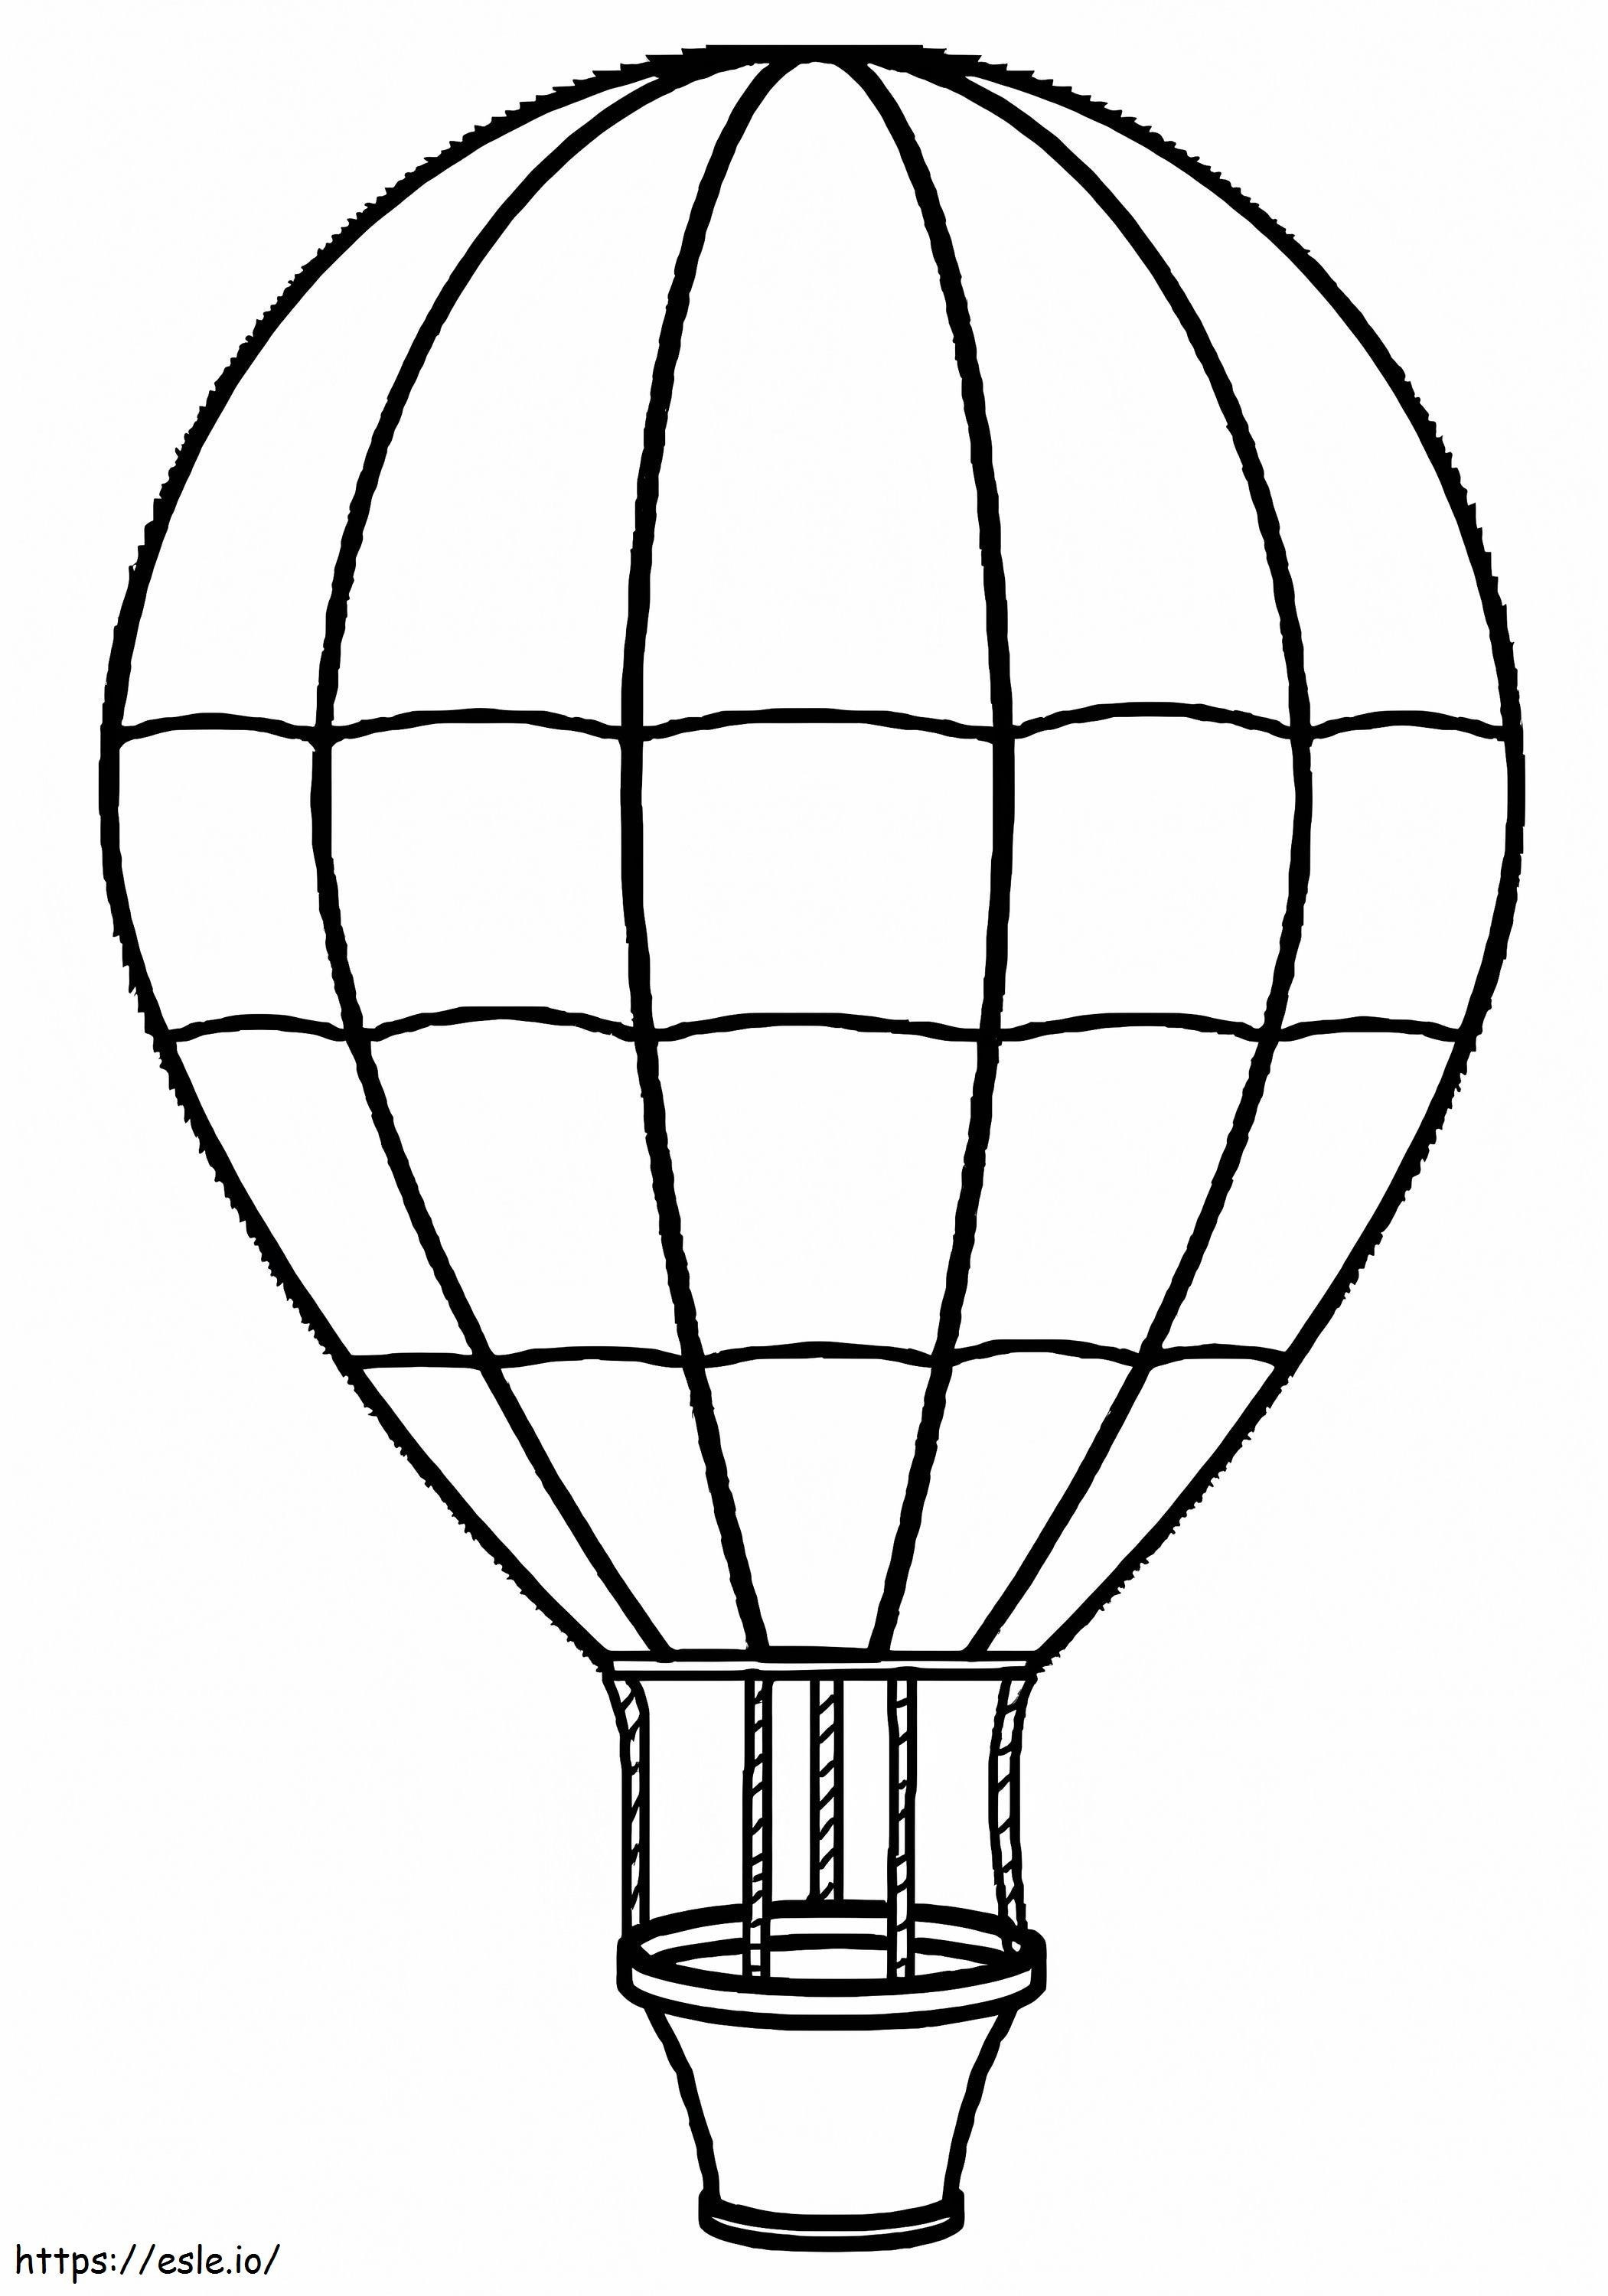 Einzelner Heißluftballon 2 ausmalbilder